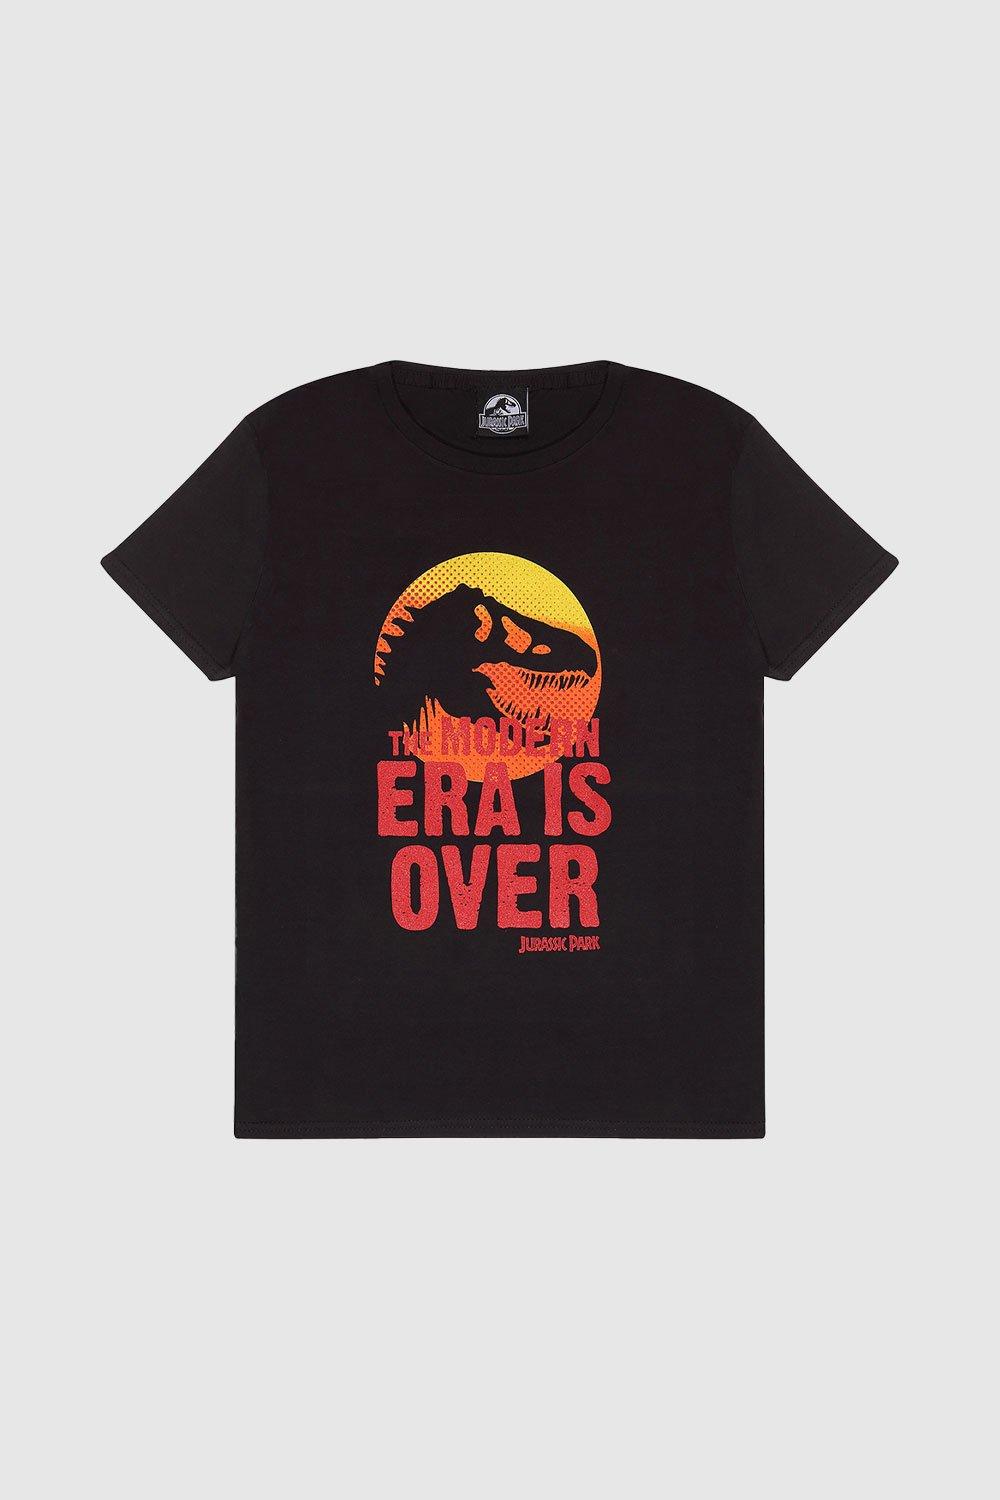 Футболка с черепом Modern Era Is Over Jurassic Park, черный лидер продаж футболка с 3d принтом парка юрского периода женская забавная футболка в стиле харадзюку хипстерская крутая футболка женские